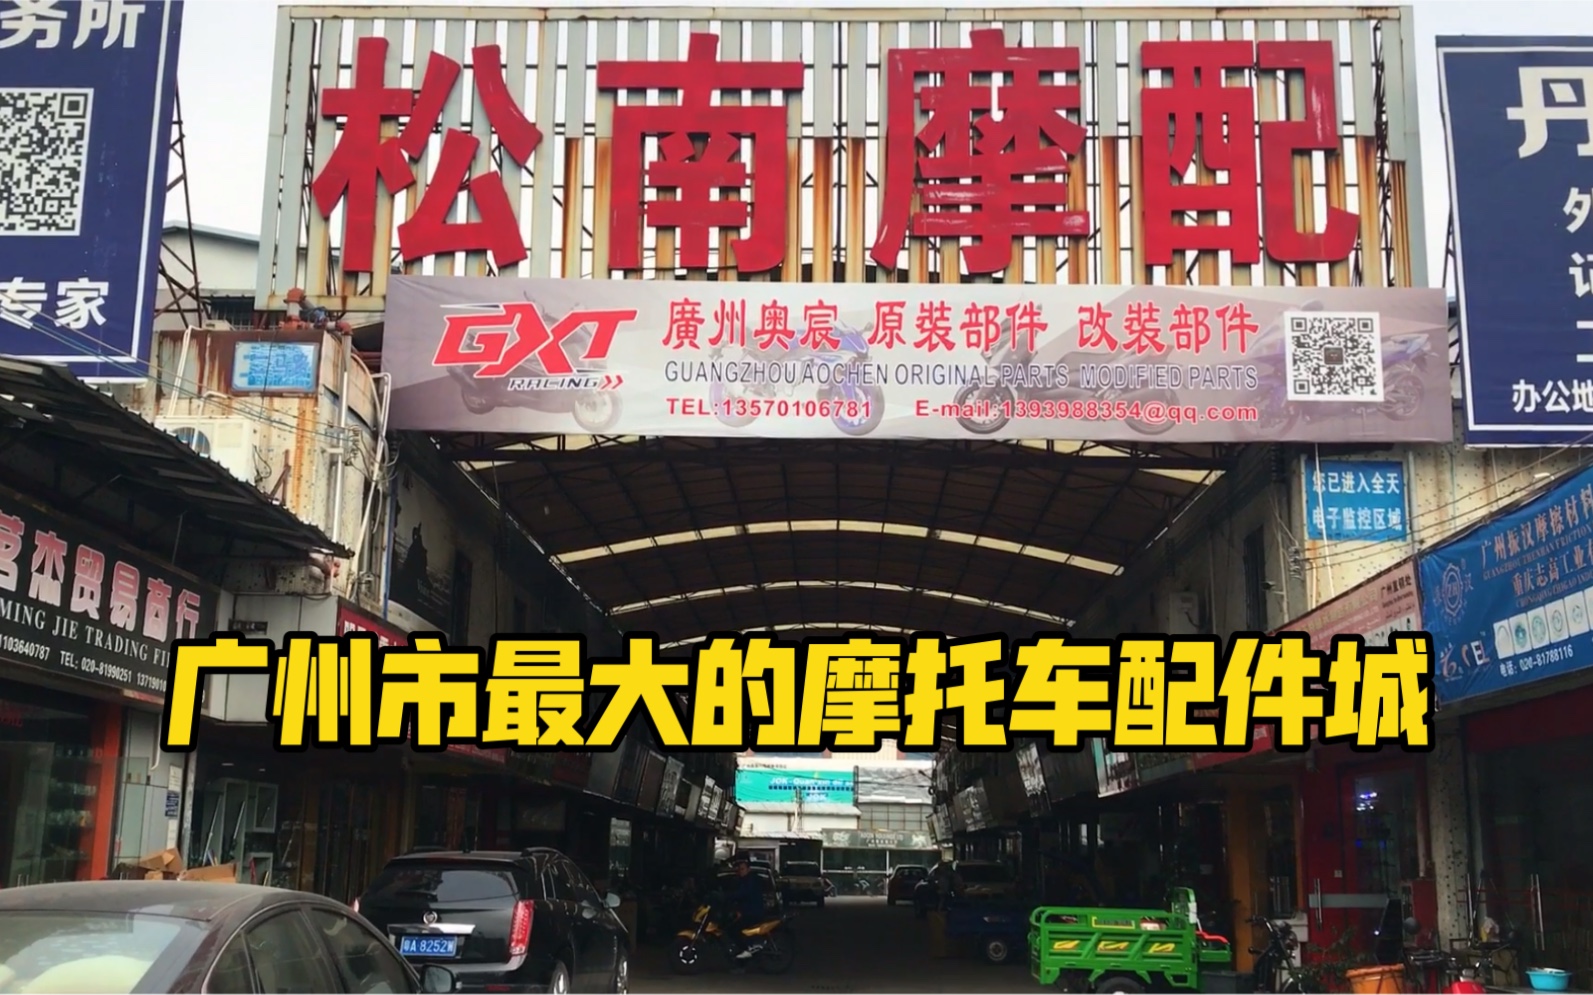 广州市最大的摩托车配件市场被隔壁广州最大的电动车批发市场慢慢吞没